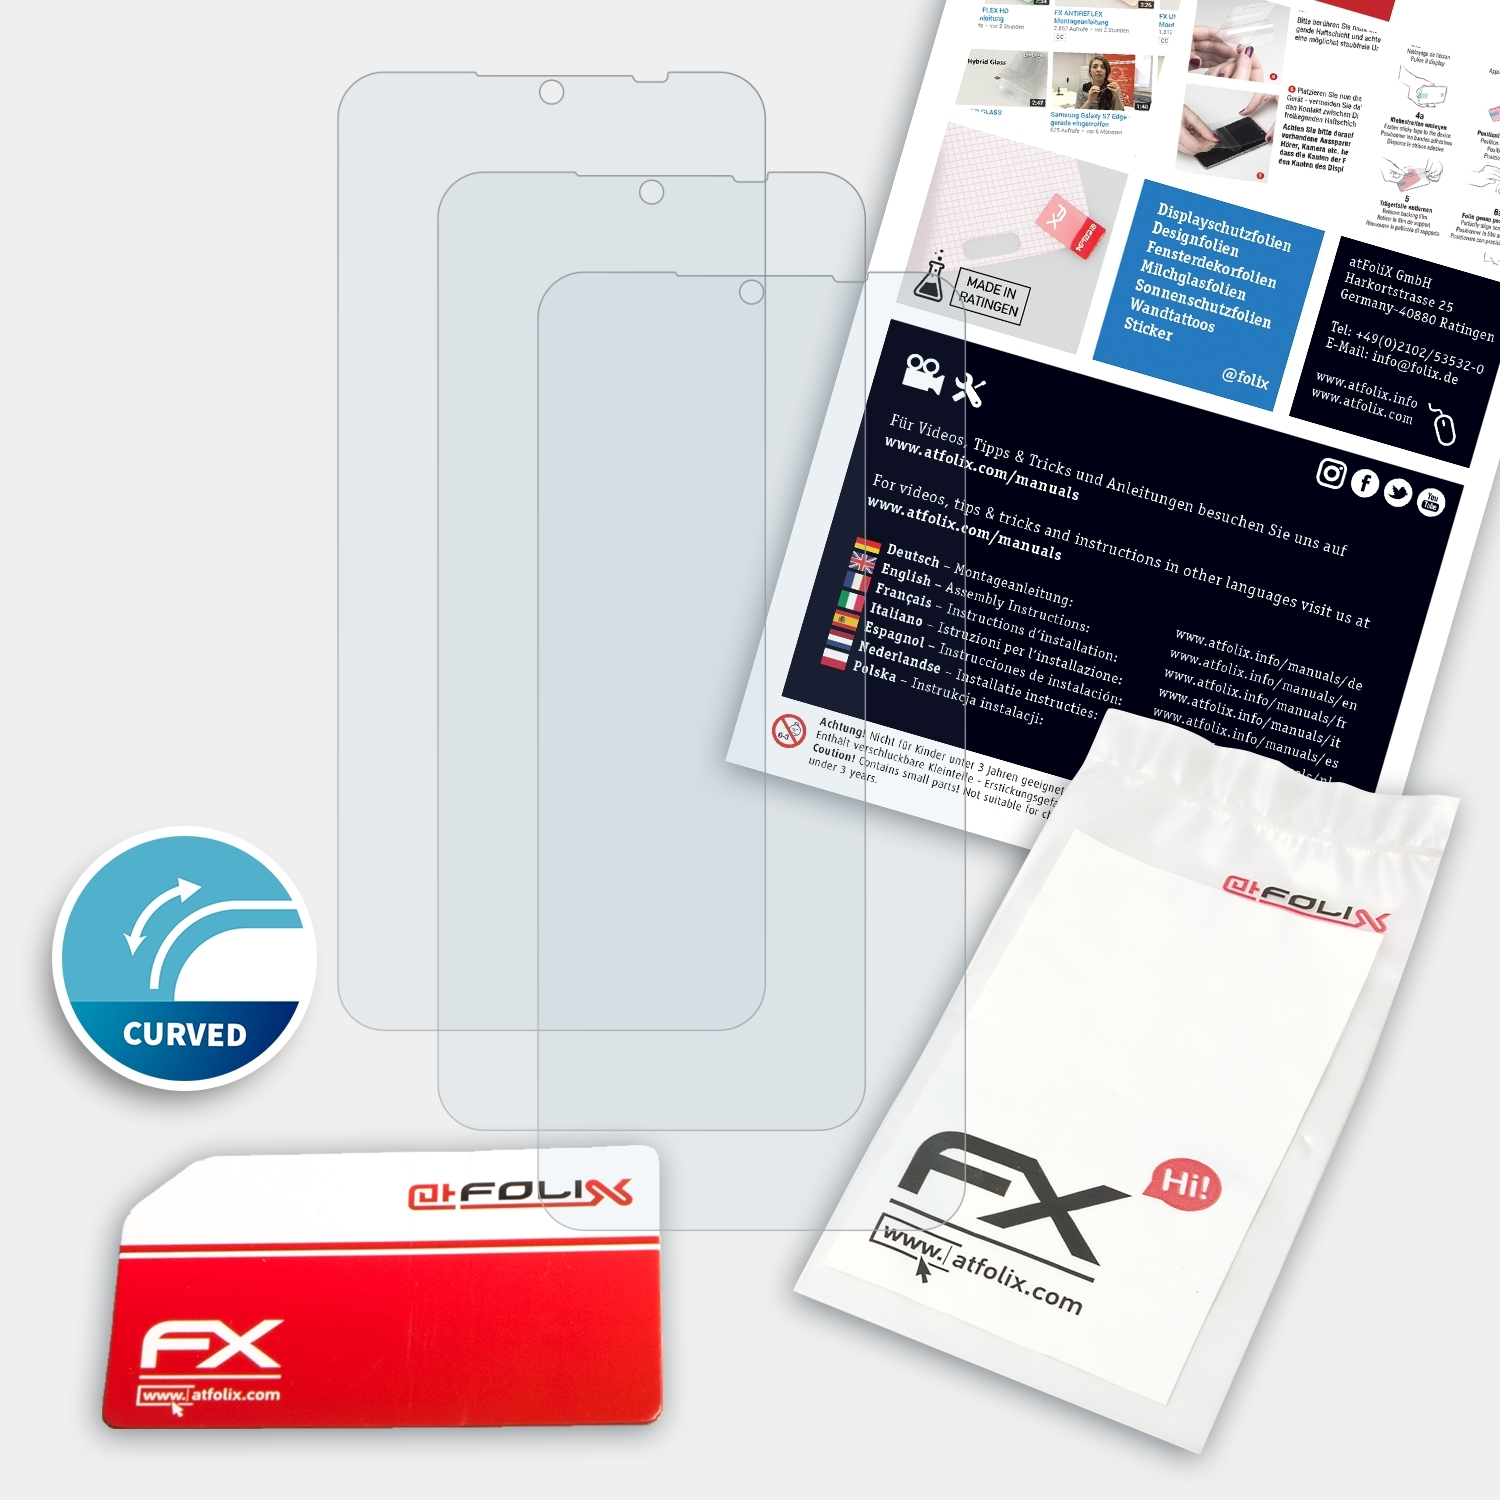 Yezz ATFOLIX 2 FX-ActiFleX Art 3x Displayschutz(für Pro)